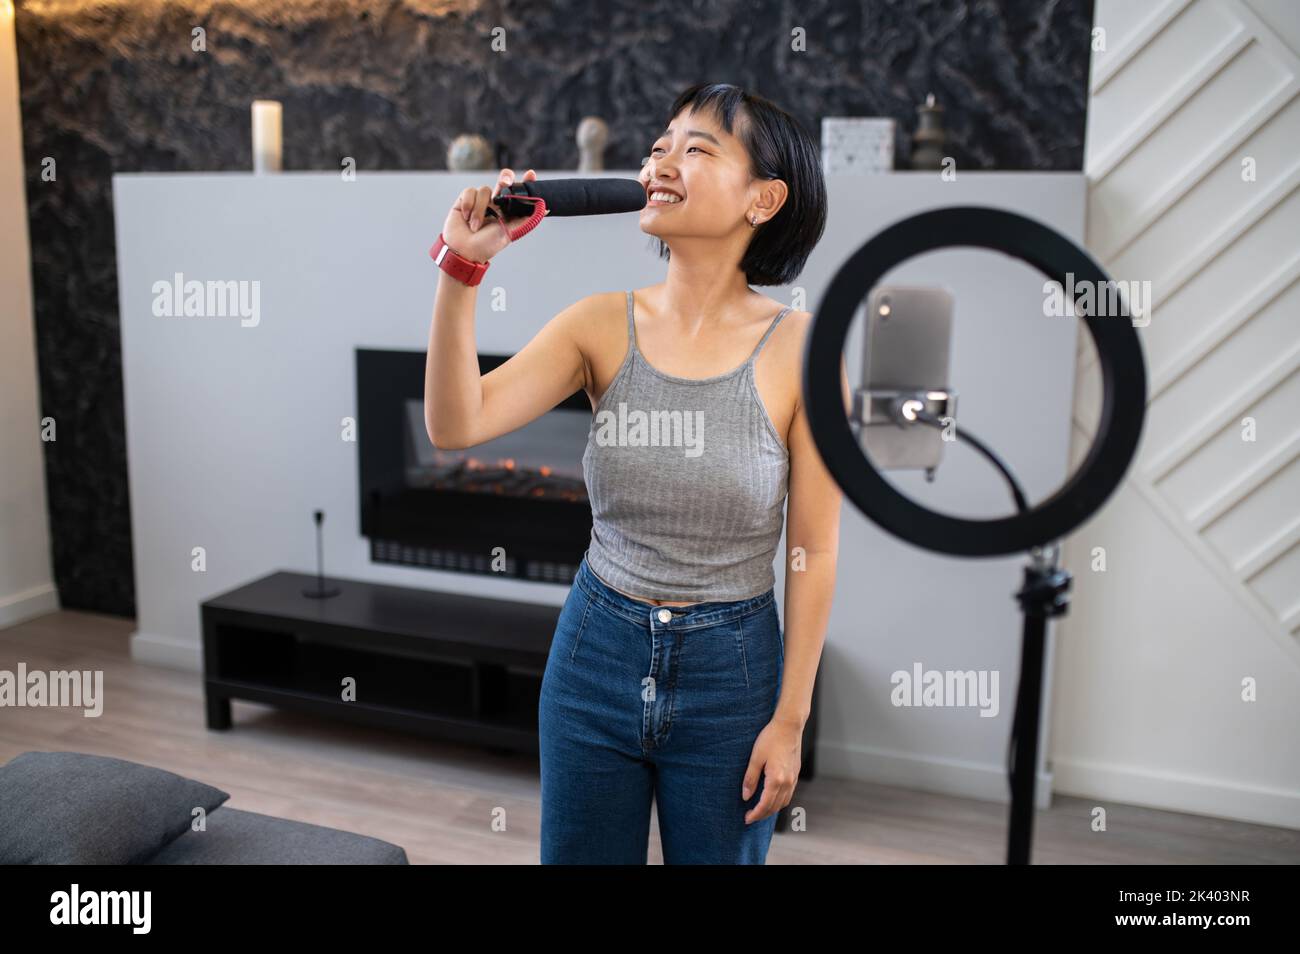 Allegra cantante asiatica che ha eseguito una canzone al suo pubblico digitale Foto Stock